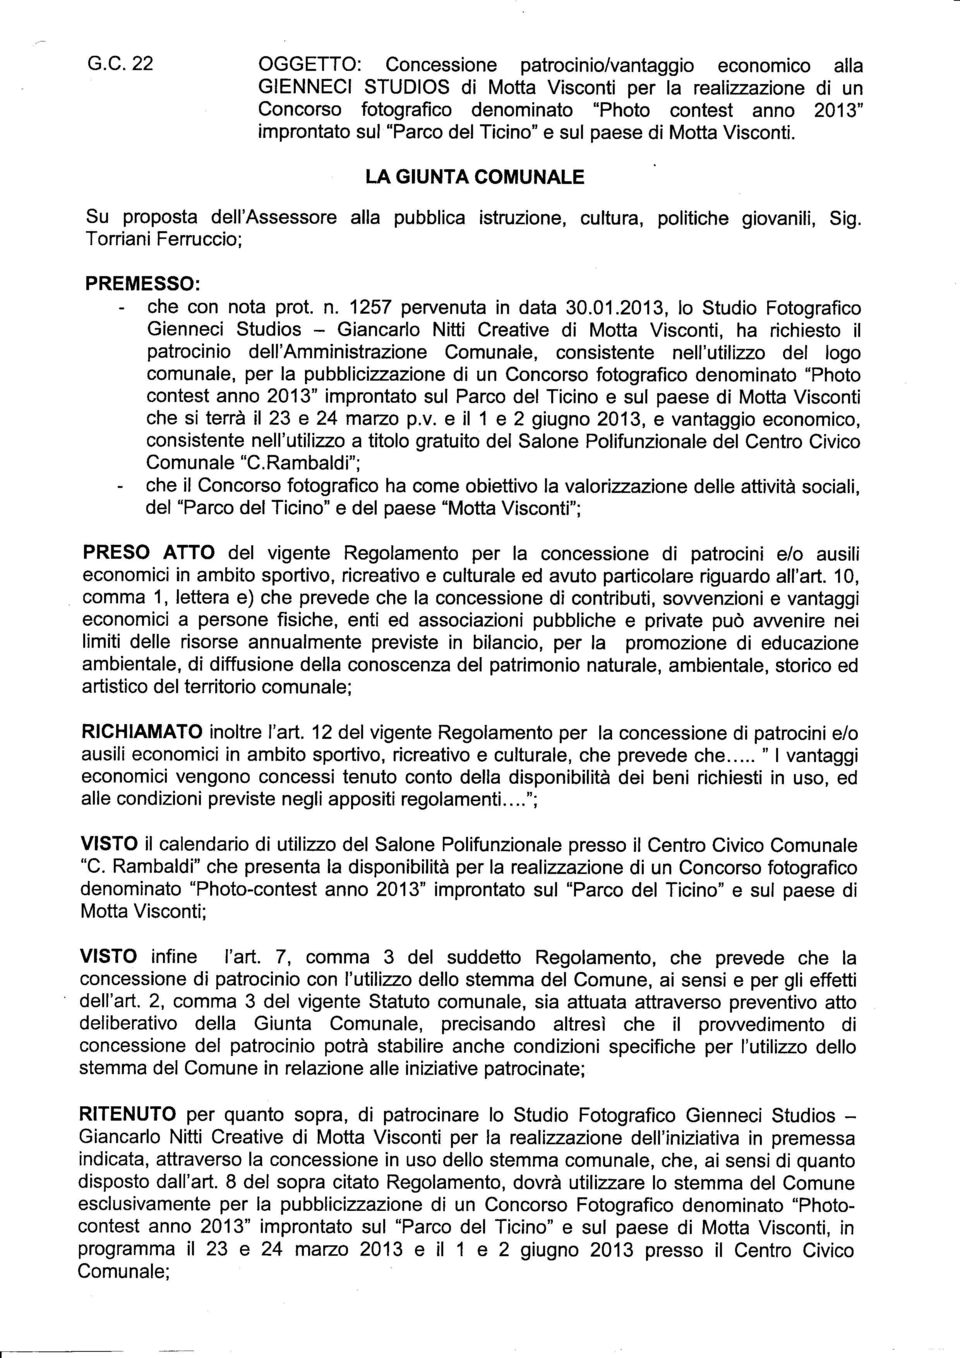 Torriani Ferruccio; PREMESSO: - che con nota prot. n. 1257 pervenuta in data 30.01.